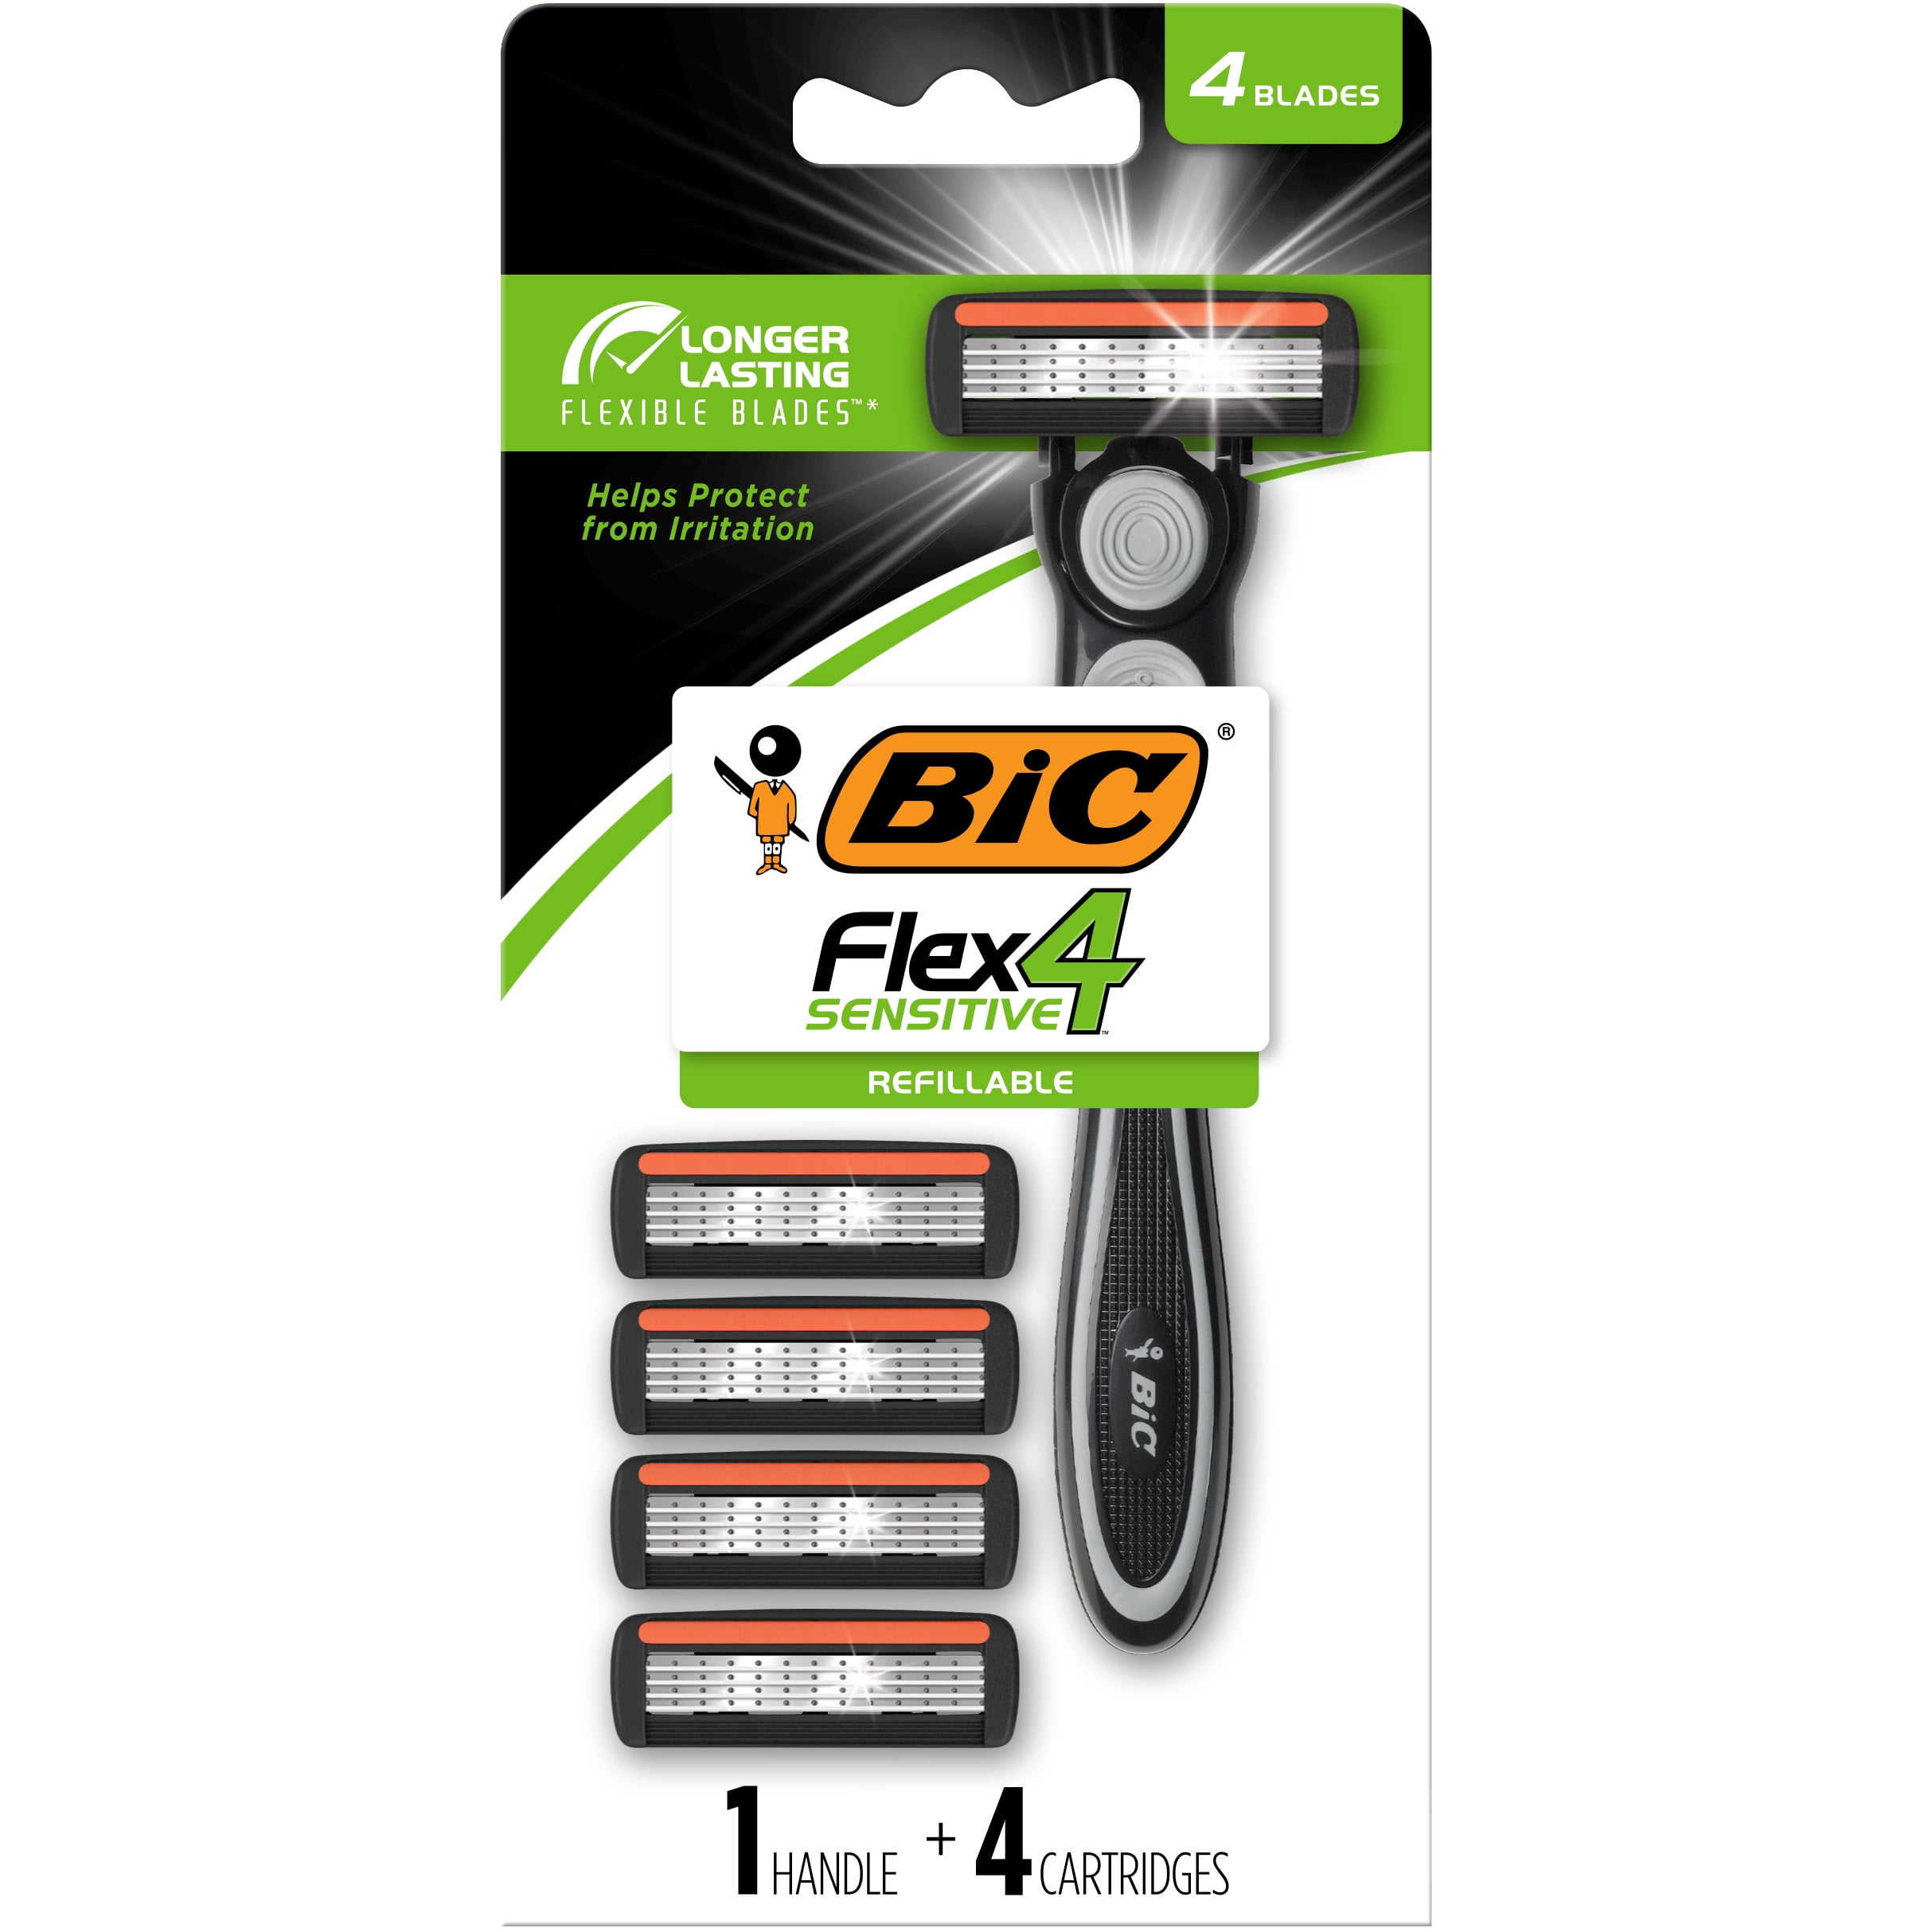 BIC Flex 4 Refillable Razors for Men, 4 Blade, 1 Handle + 4 Cartridges, 5 Piece Set